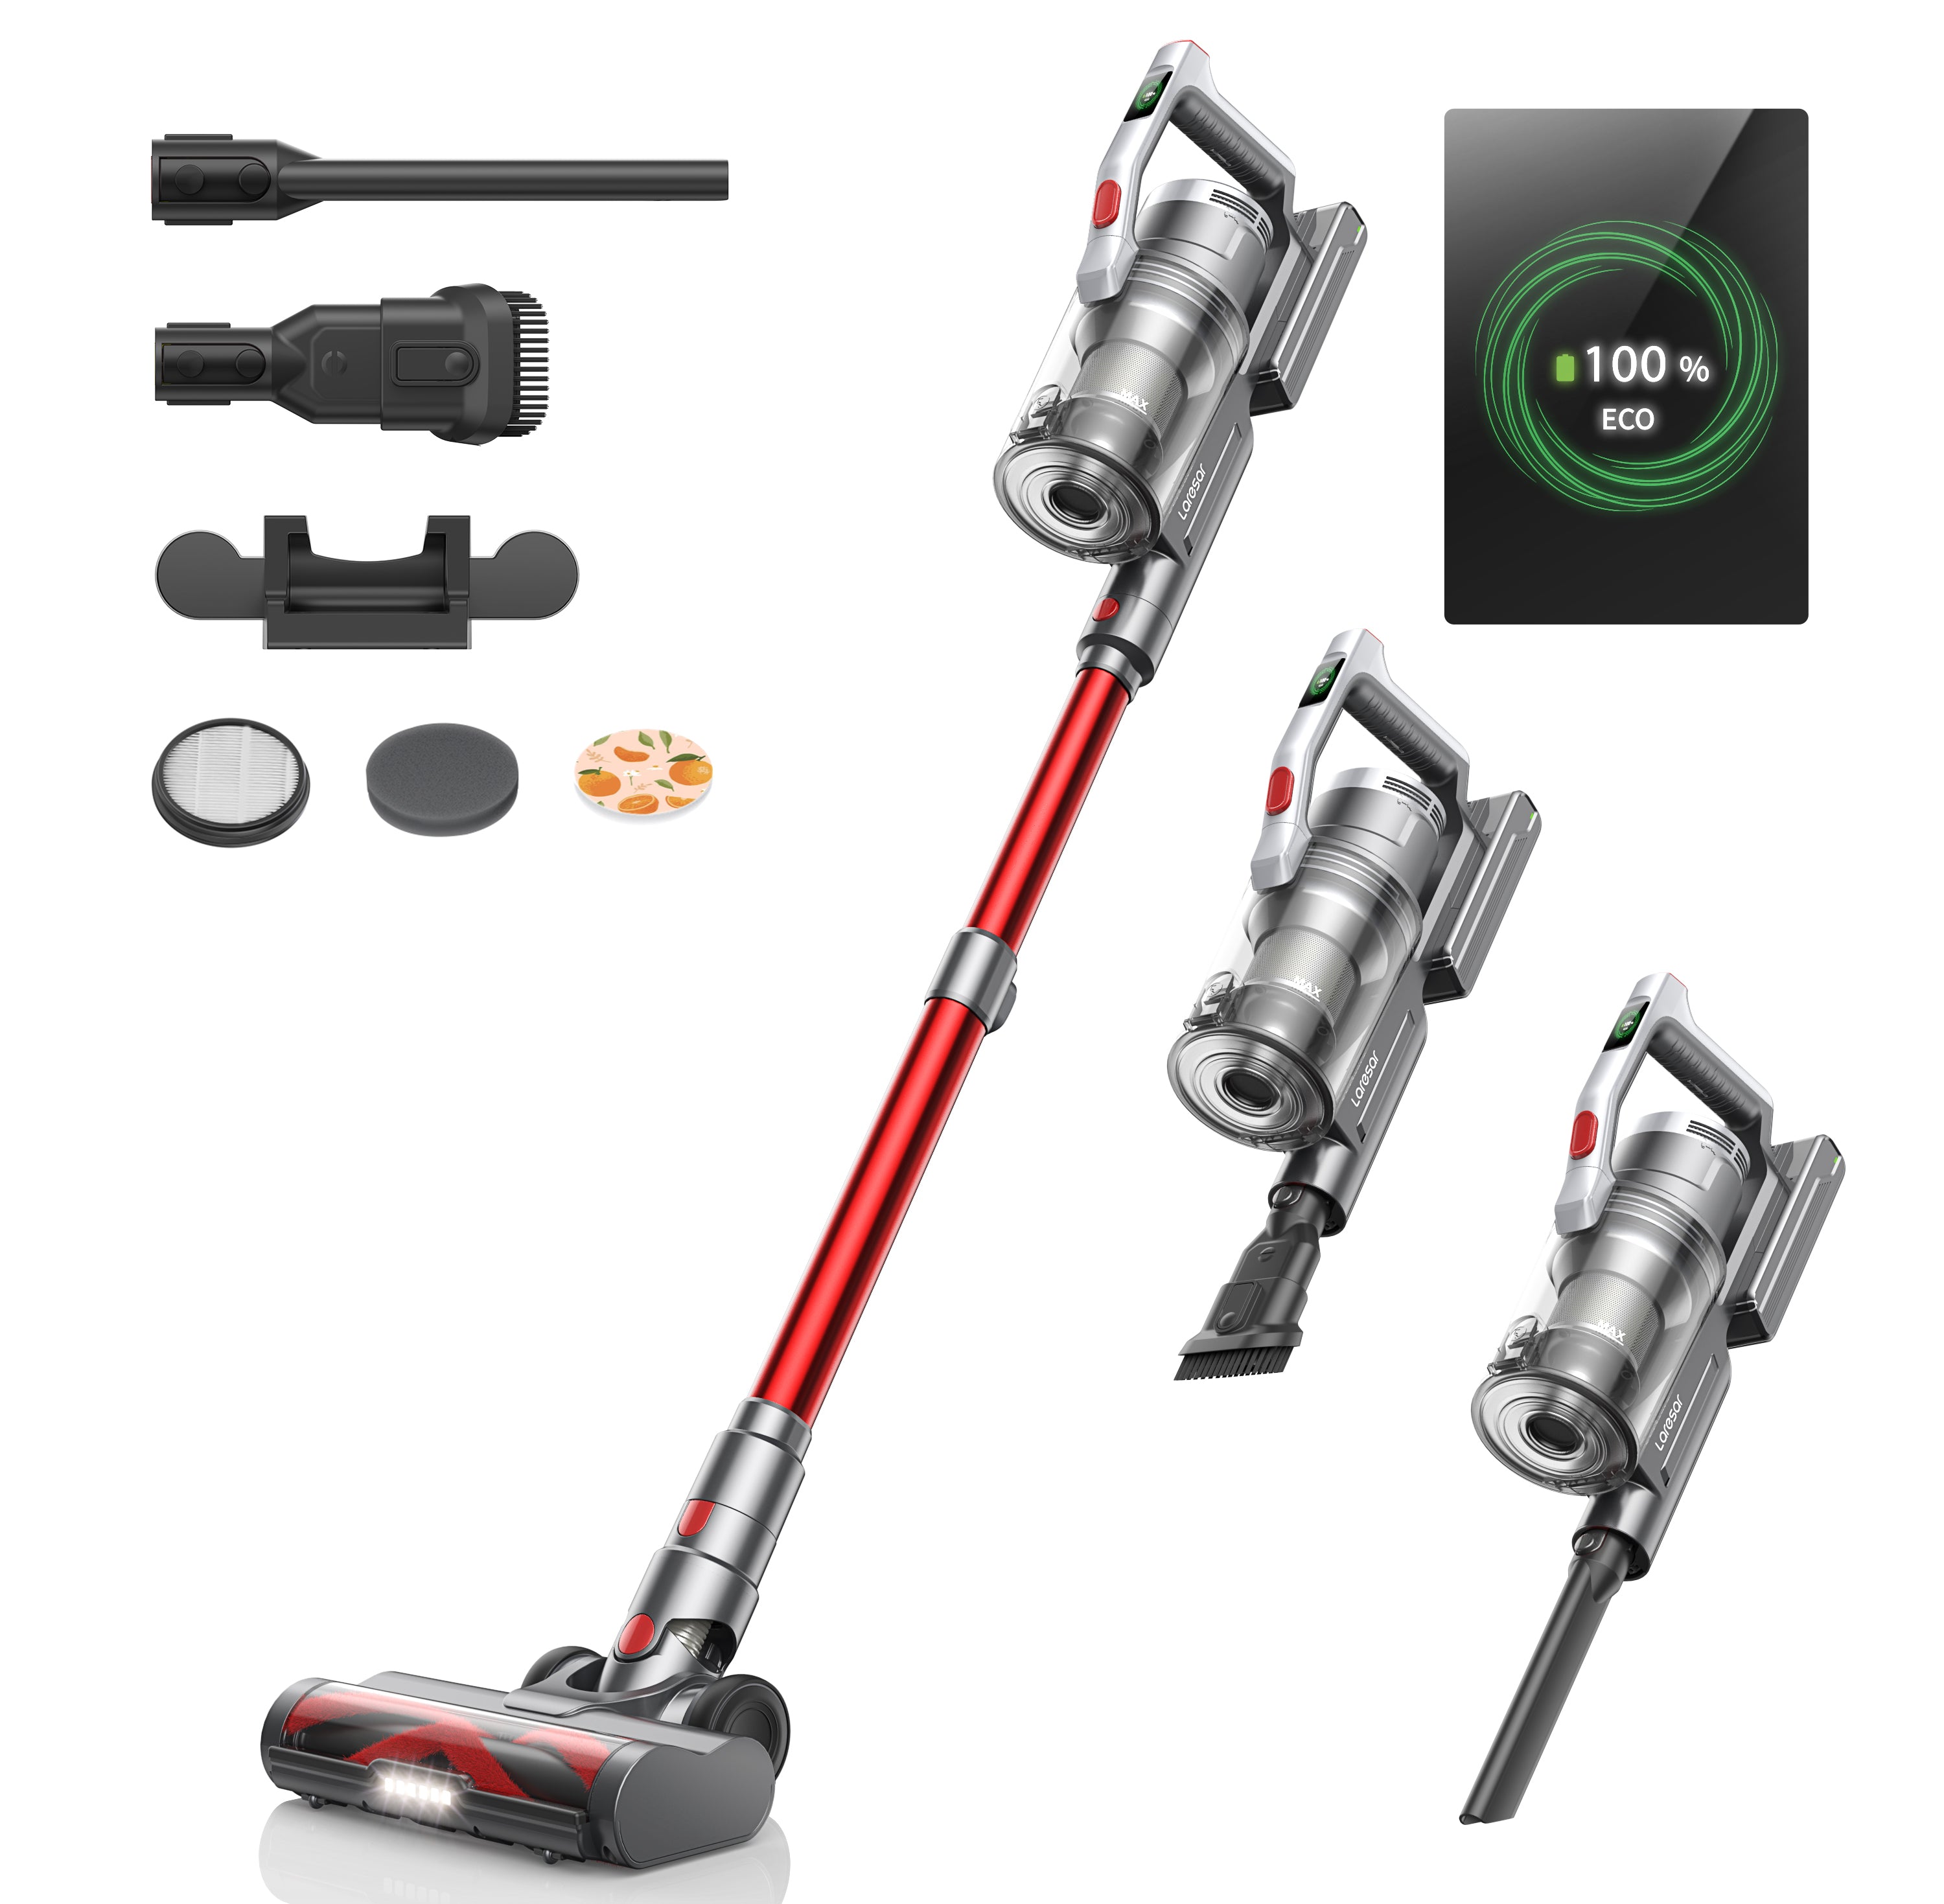 Laresar Elite 3 Cordless Stick Vacuum